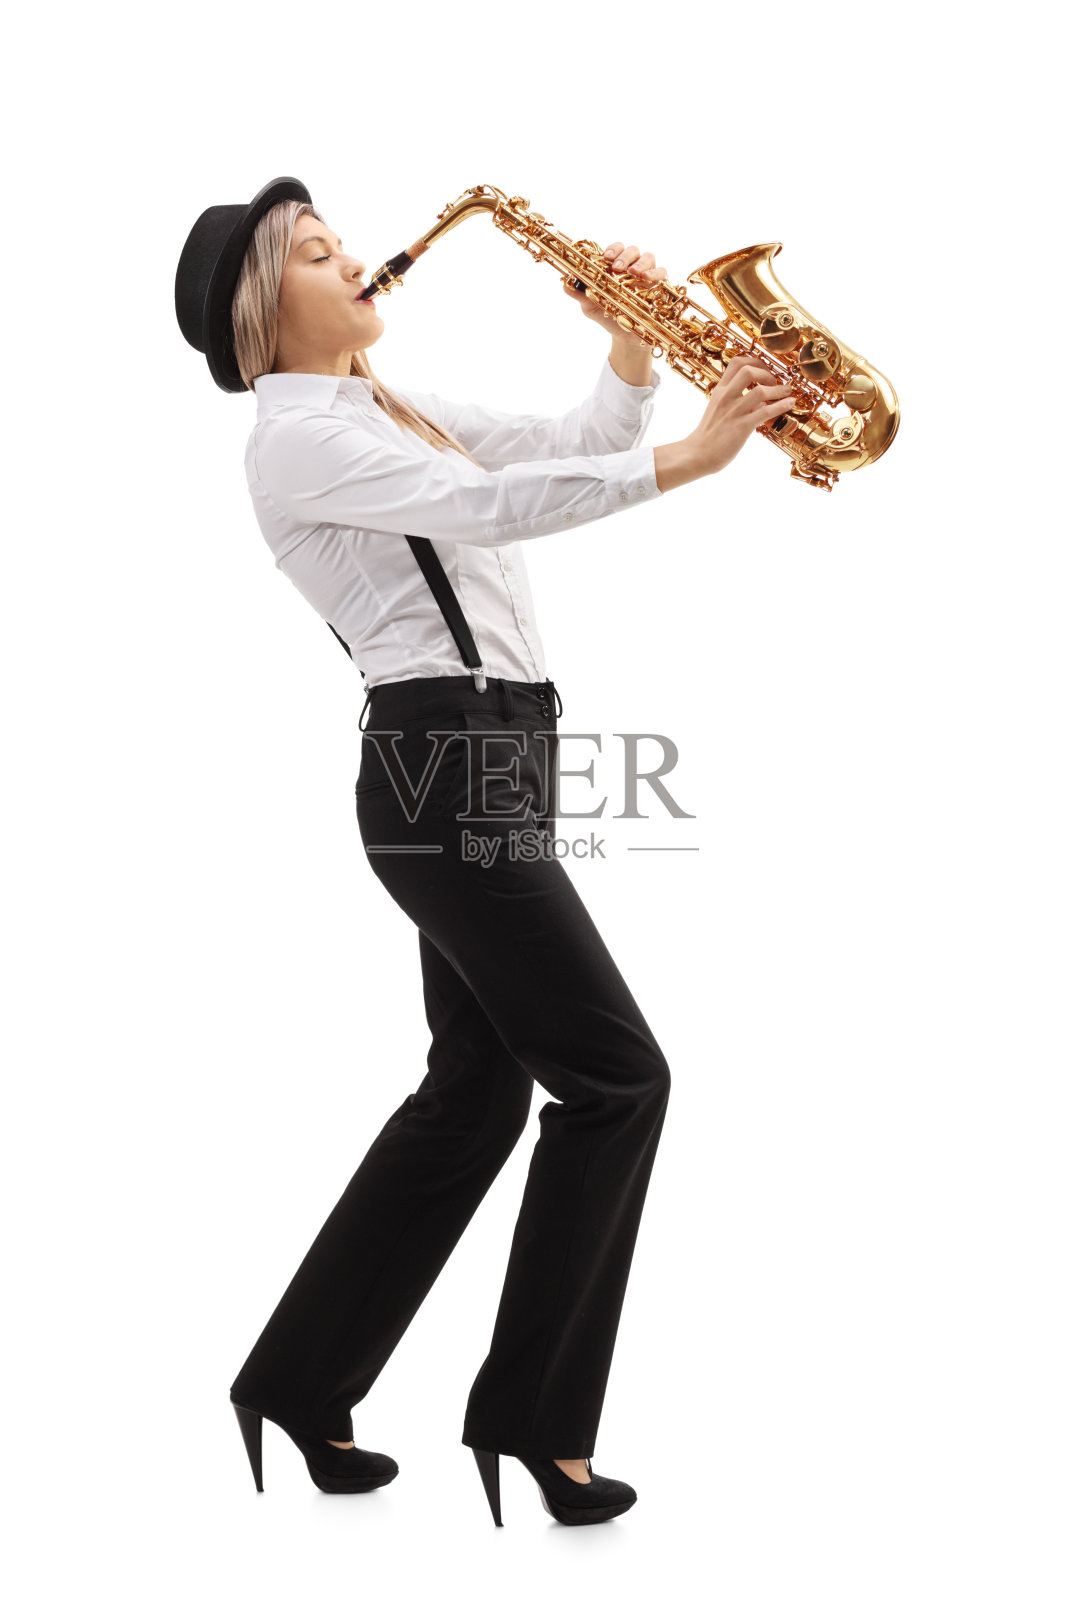 弹奏萨克斯管的女爵士音乐家照片摄影图片